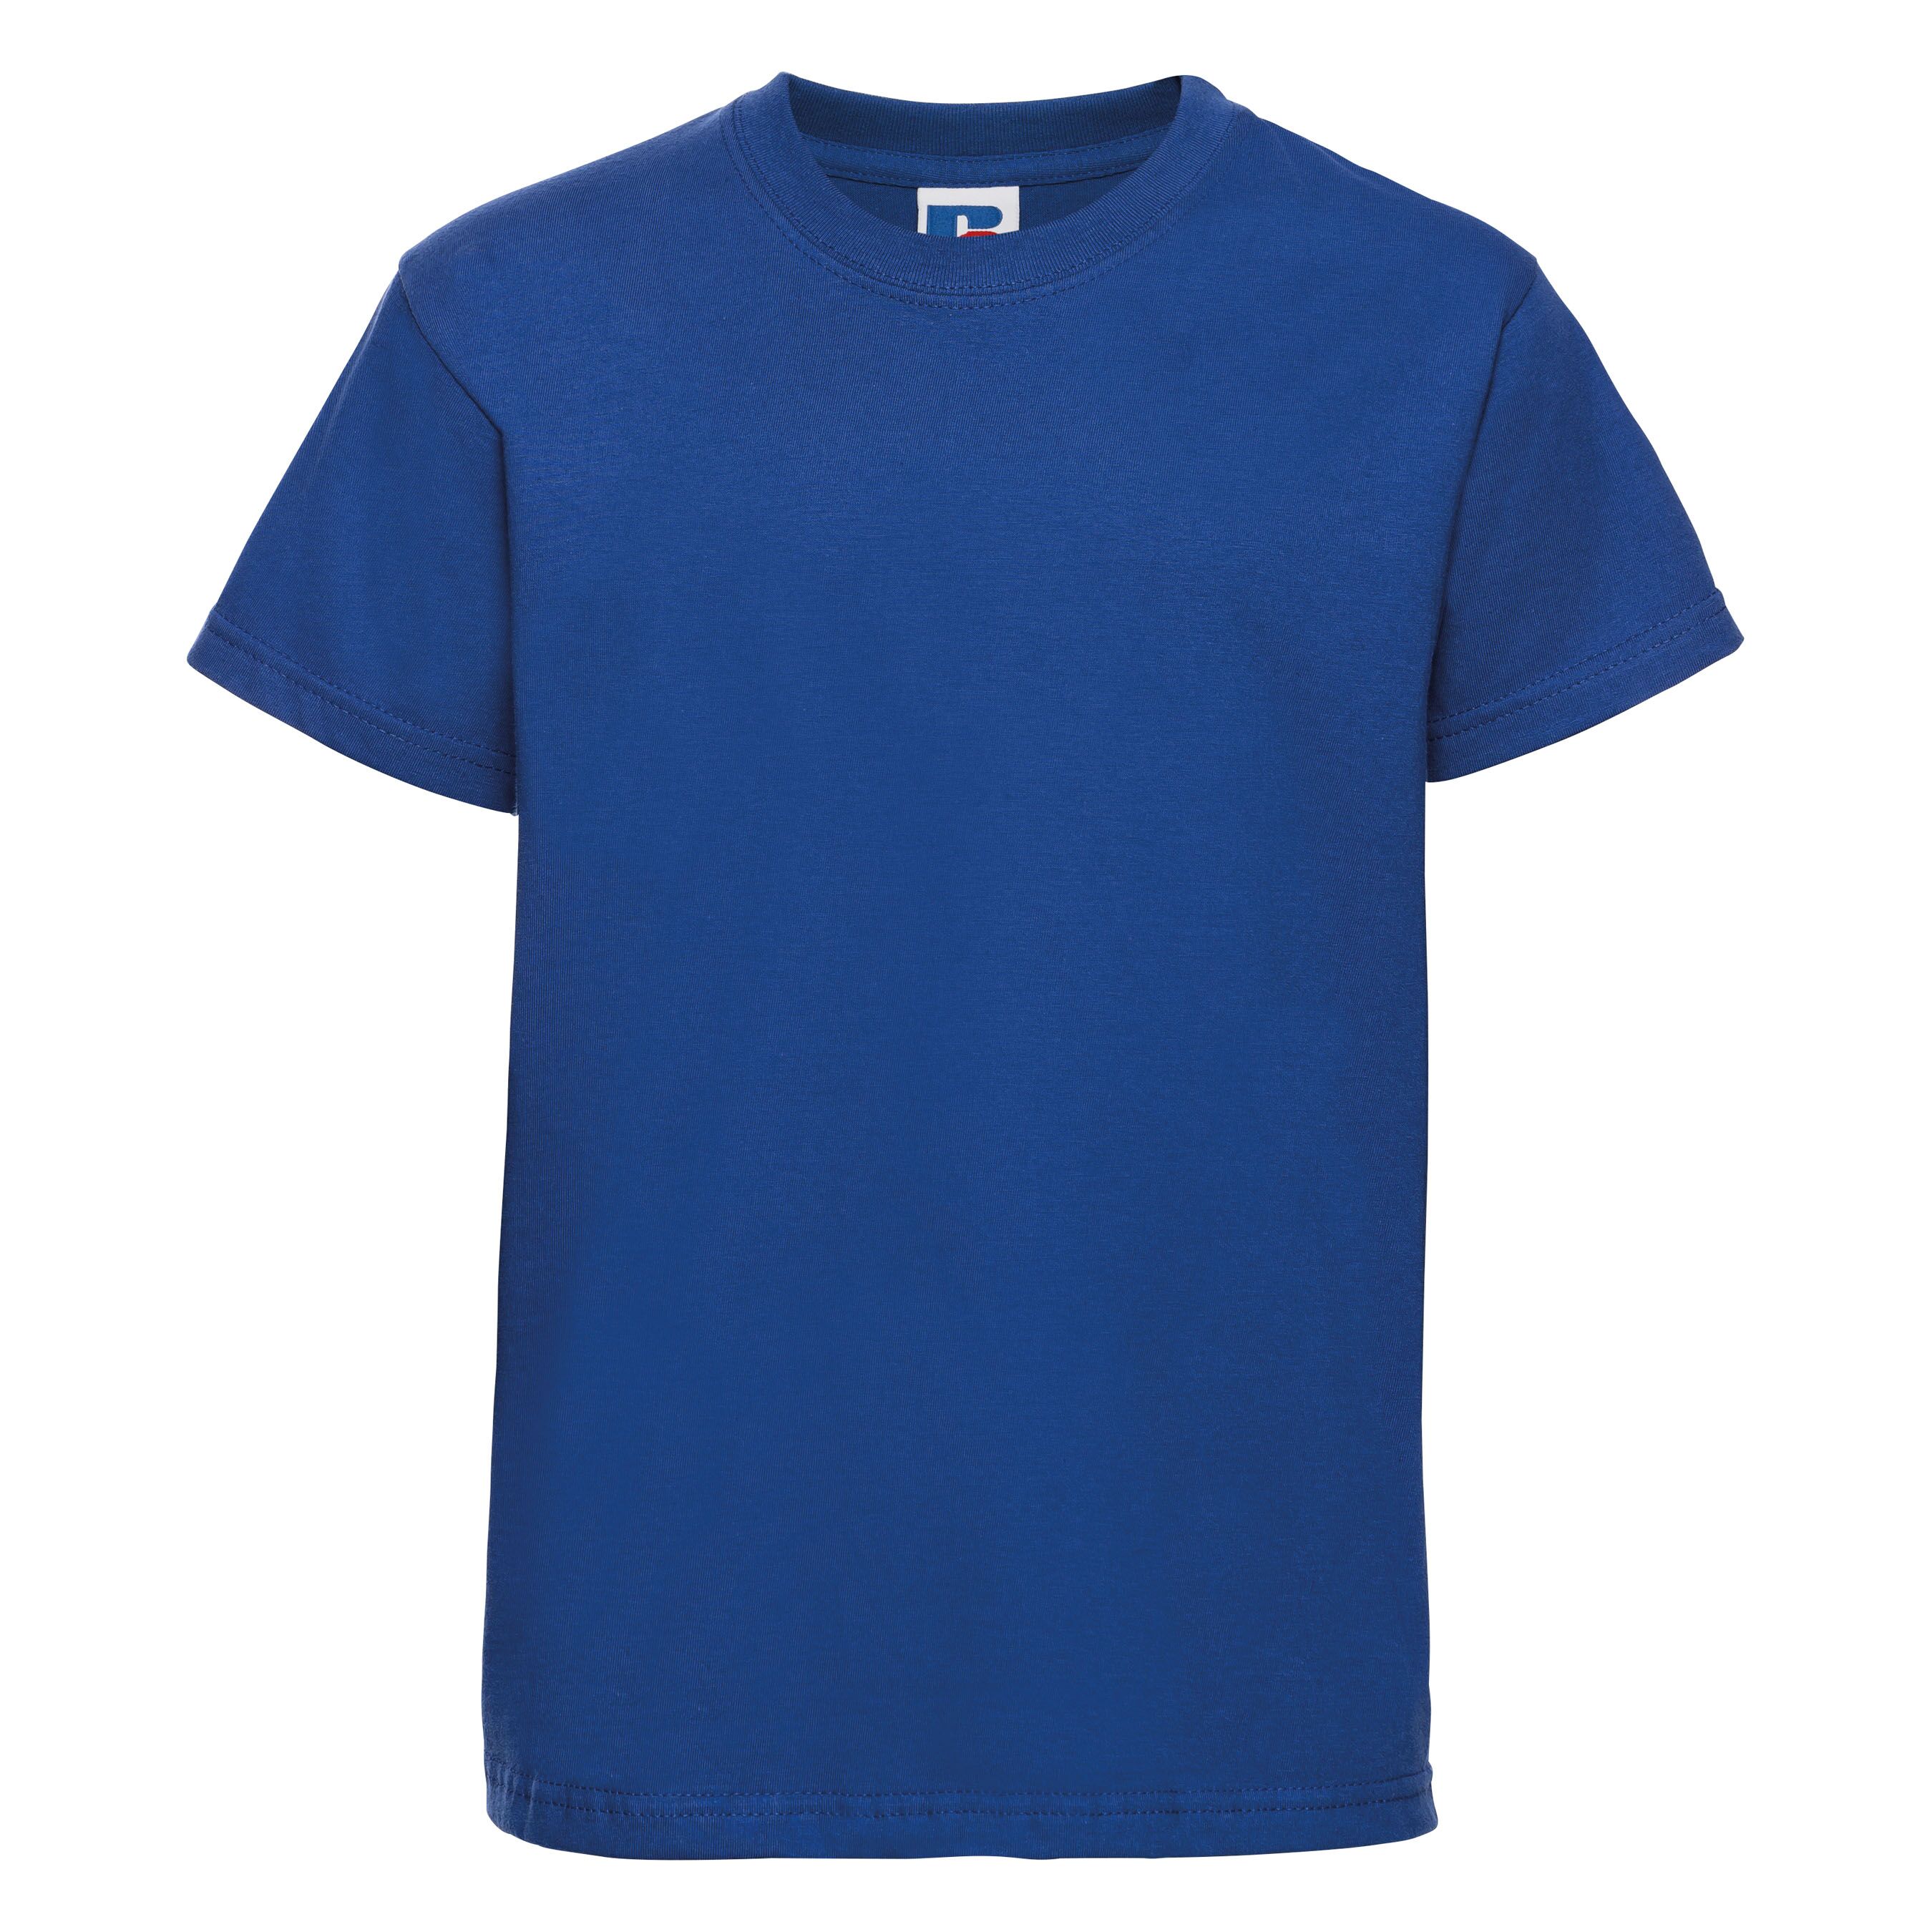 Premium children's round neck t-shirt - Bright Blue